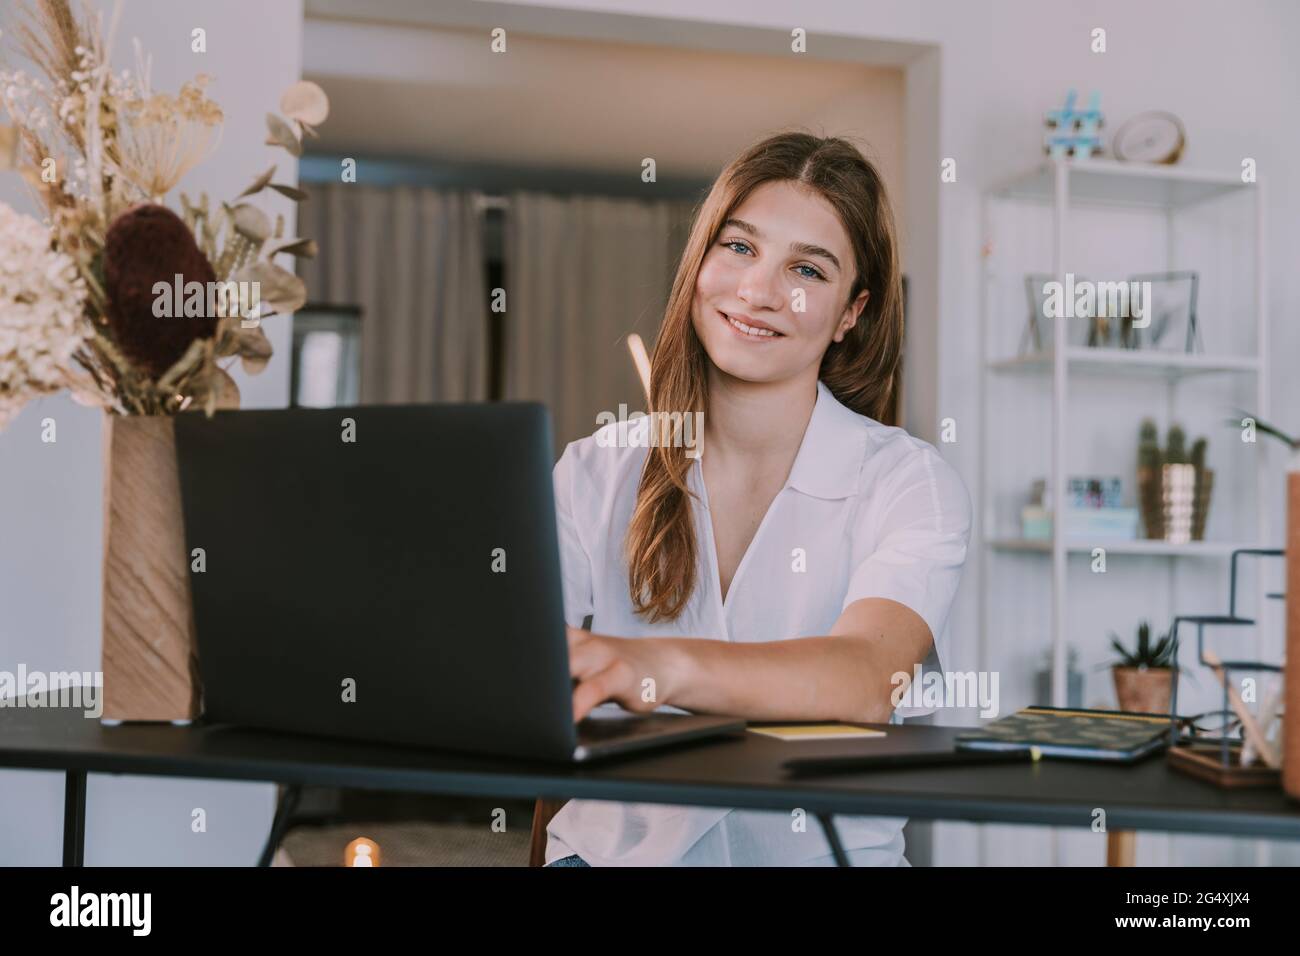 Femme souriante étudiant utilisant un ordinateur portable sur le bureau à la maison Banque D'Images